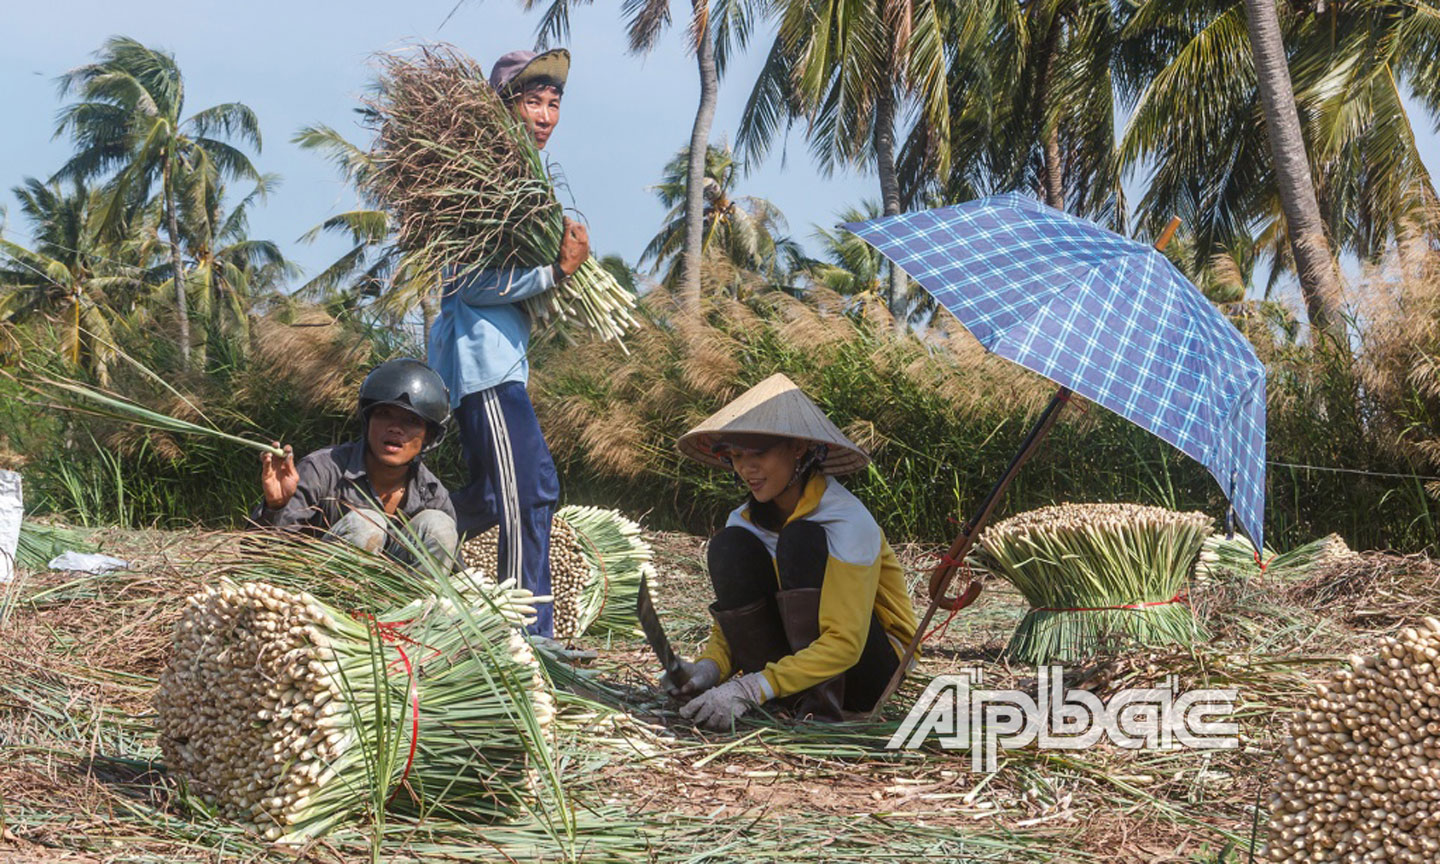 Sả là cây trồng góp phần nâng cao thu nhập cho nhiều hộ dân ở huyện Tân Phú Đông trong những năm qua.